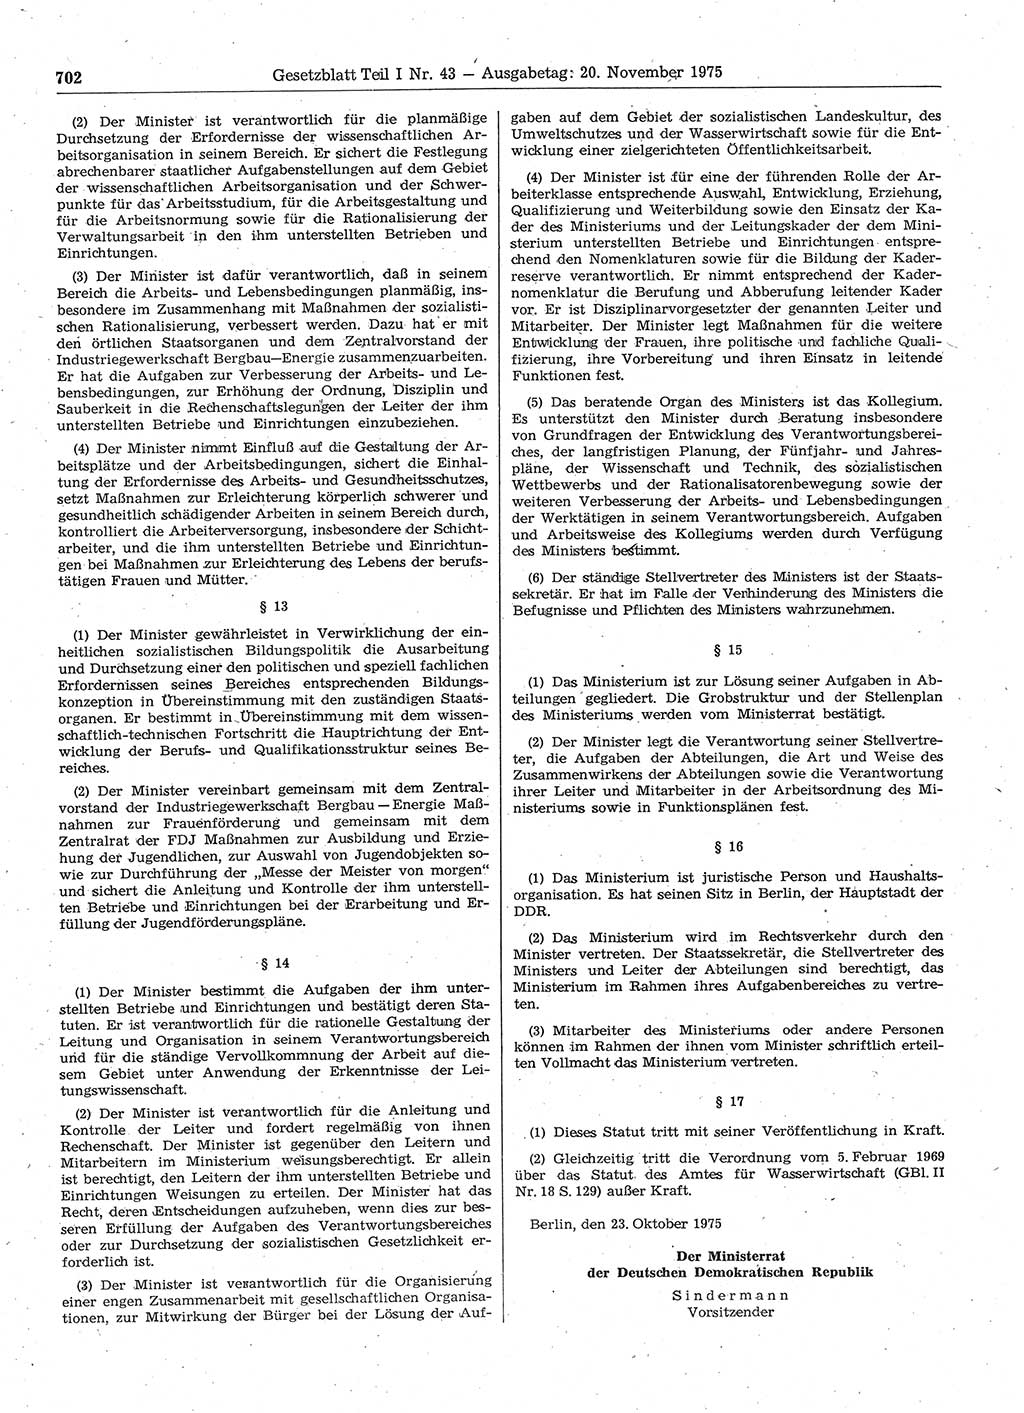 Gesetzblatt (GBl.) der Deutschen Demokratischen Republik (DDR) Teil Ⅰ 1975, Seite 702 (GBl. DDR Ⅰ 1975, S. 702)